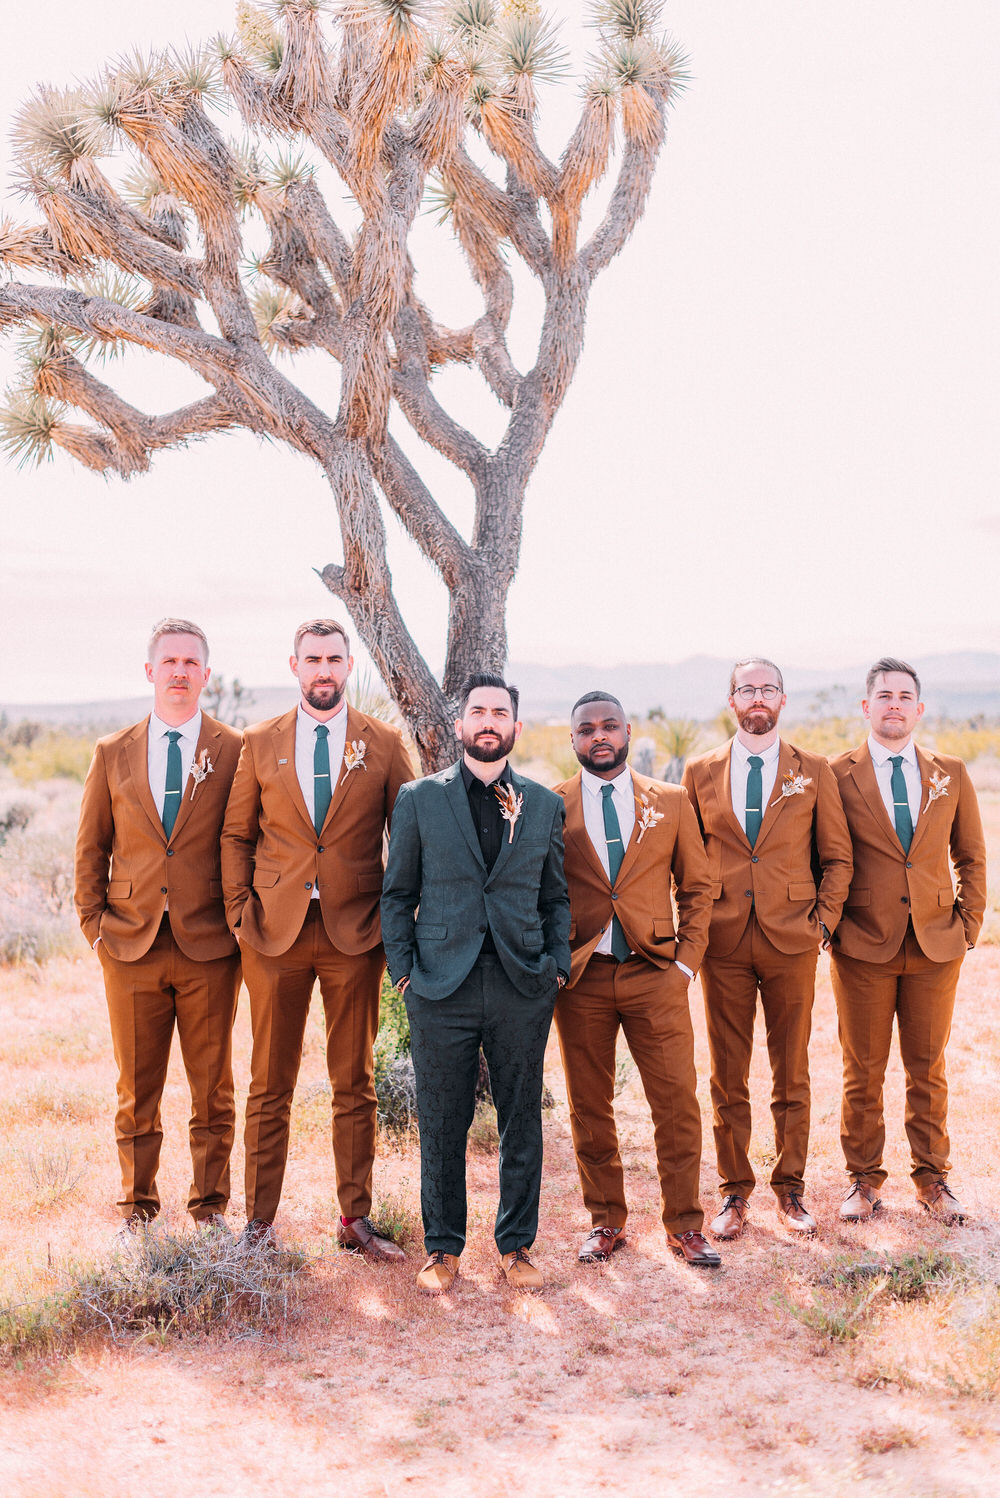 Best Wedding Suits for Groom and Groomsmen – StudioSuits